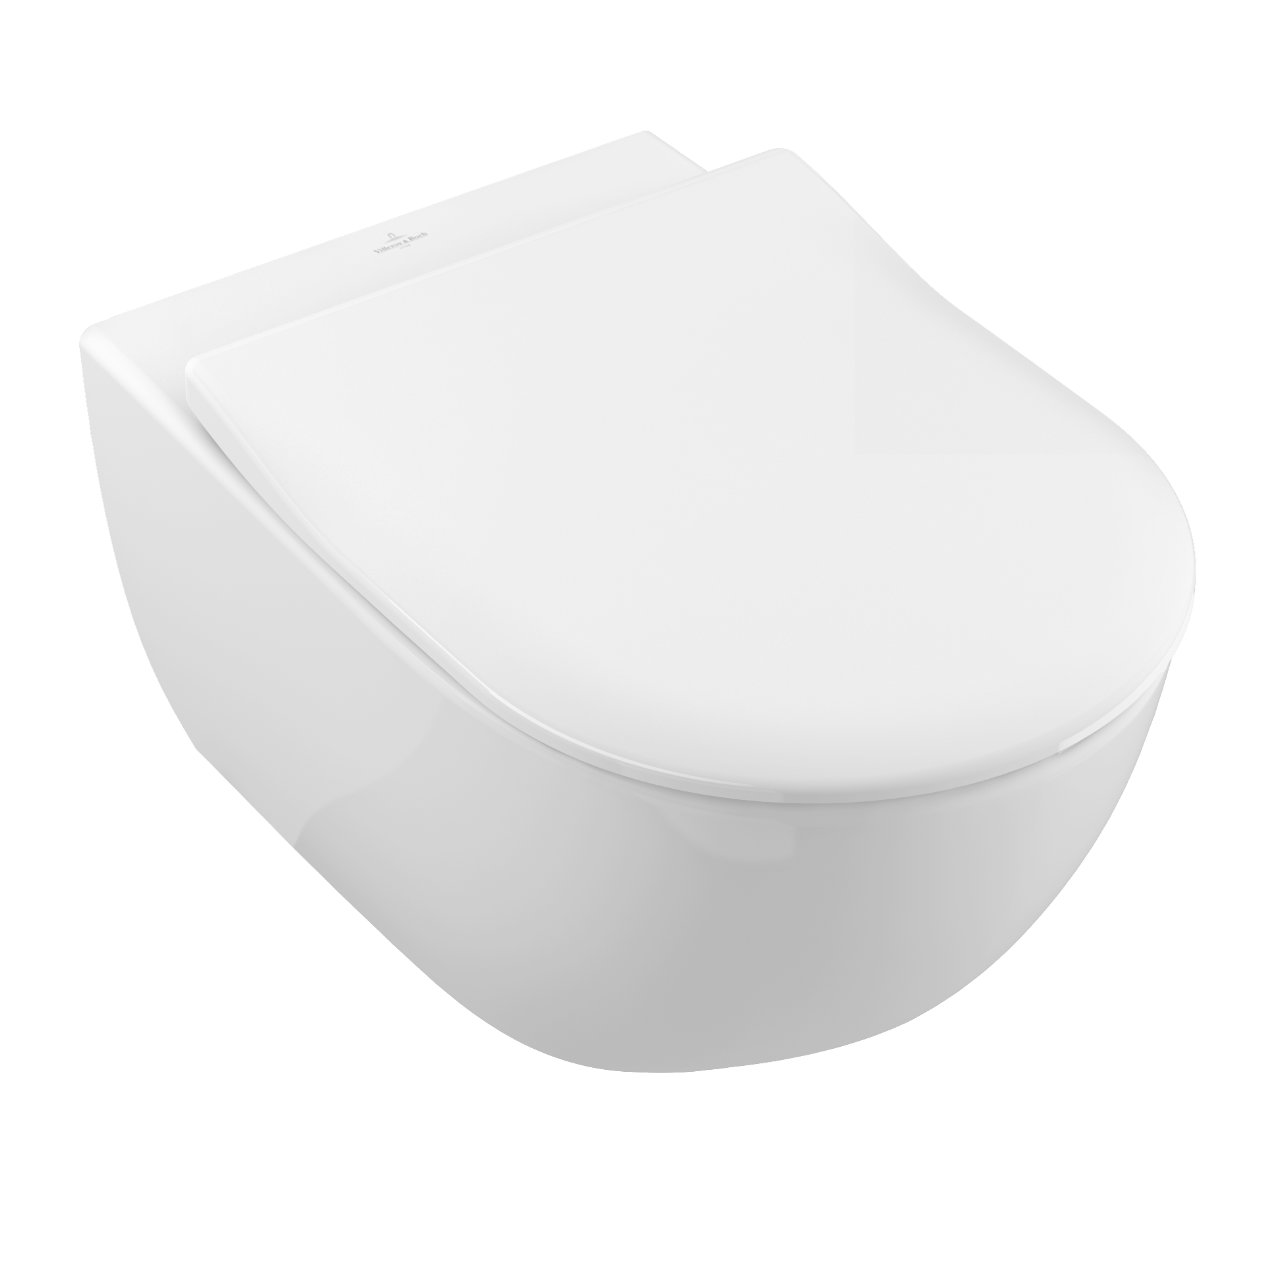 Design in Bad Vorwandelement mit Subway 2.0-WC, SlimSeat und Betätigungsplatte